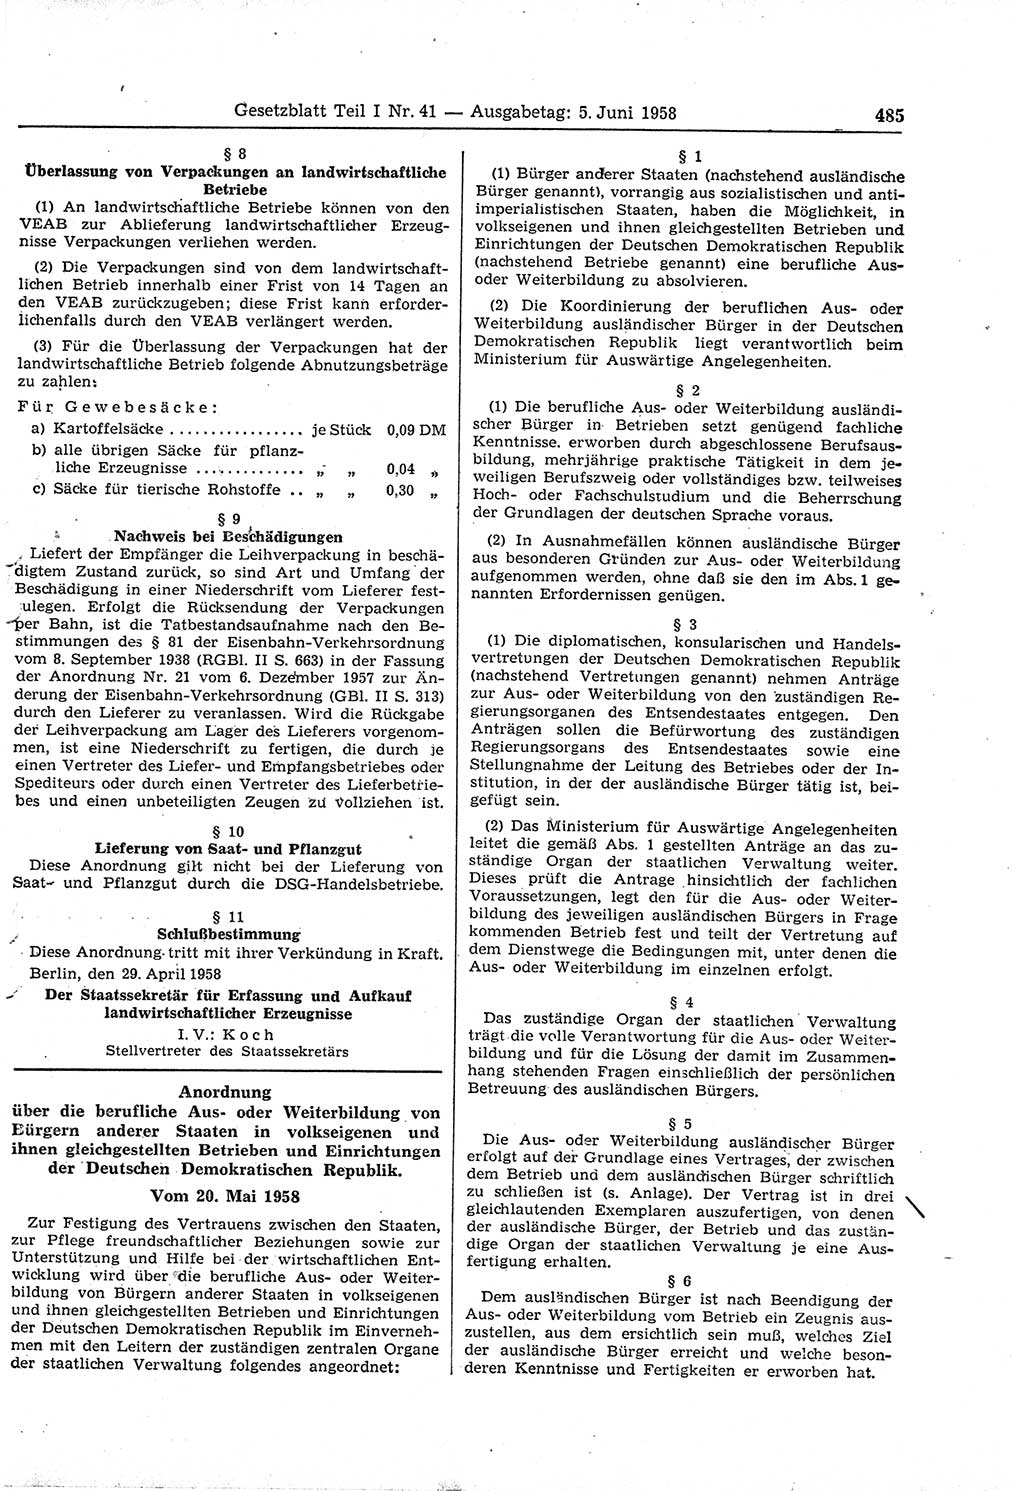 Gesetzblatt (GBl.) der Deutschen Demokratischen Republik (DDR) Teil Ⅰ 1958, Seite 485 (GBl. DDR Ⅰ 1958, S. 485)